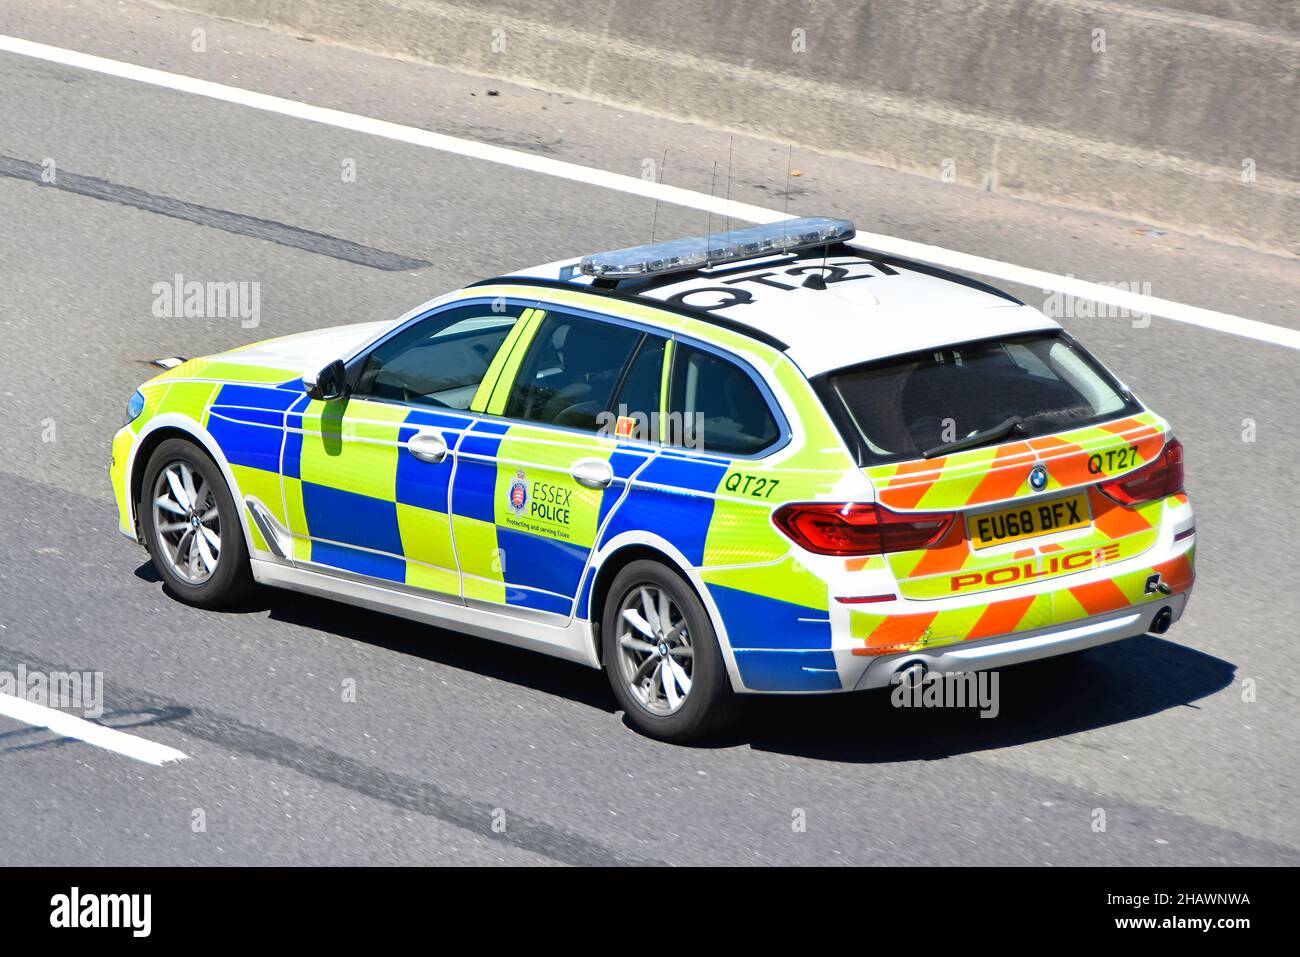 Vue rapprochée des côtés et de l'arrière de la patrouille de police d'Essex, conduite le long de l'autoroute anglaise, avec marquages réfléchissants de battenberg UK Banque D'Images